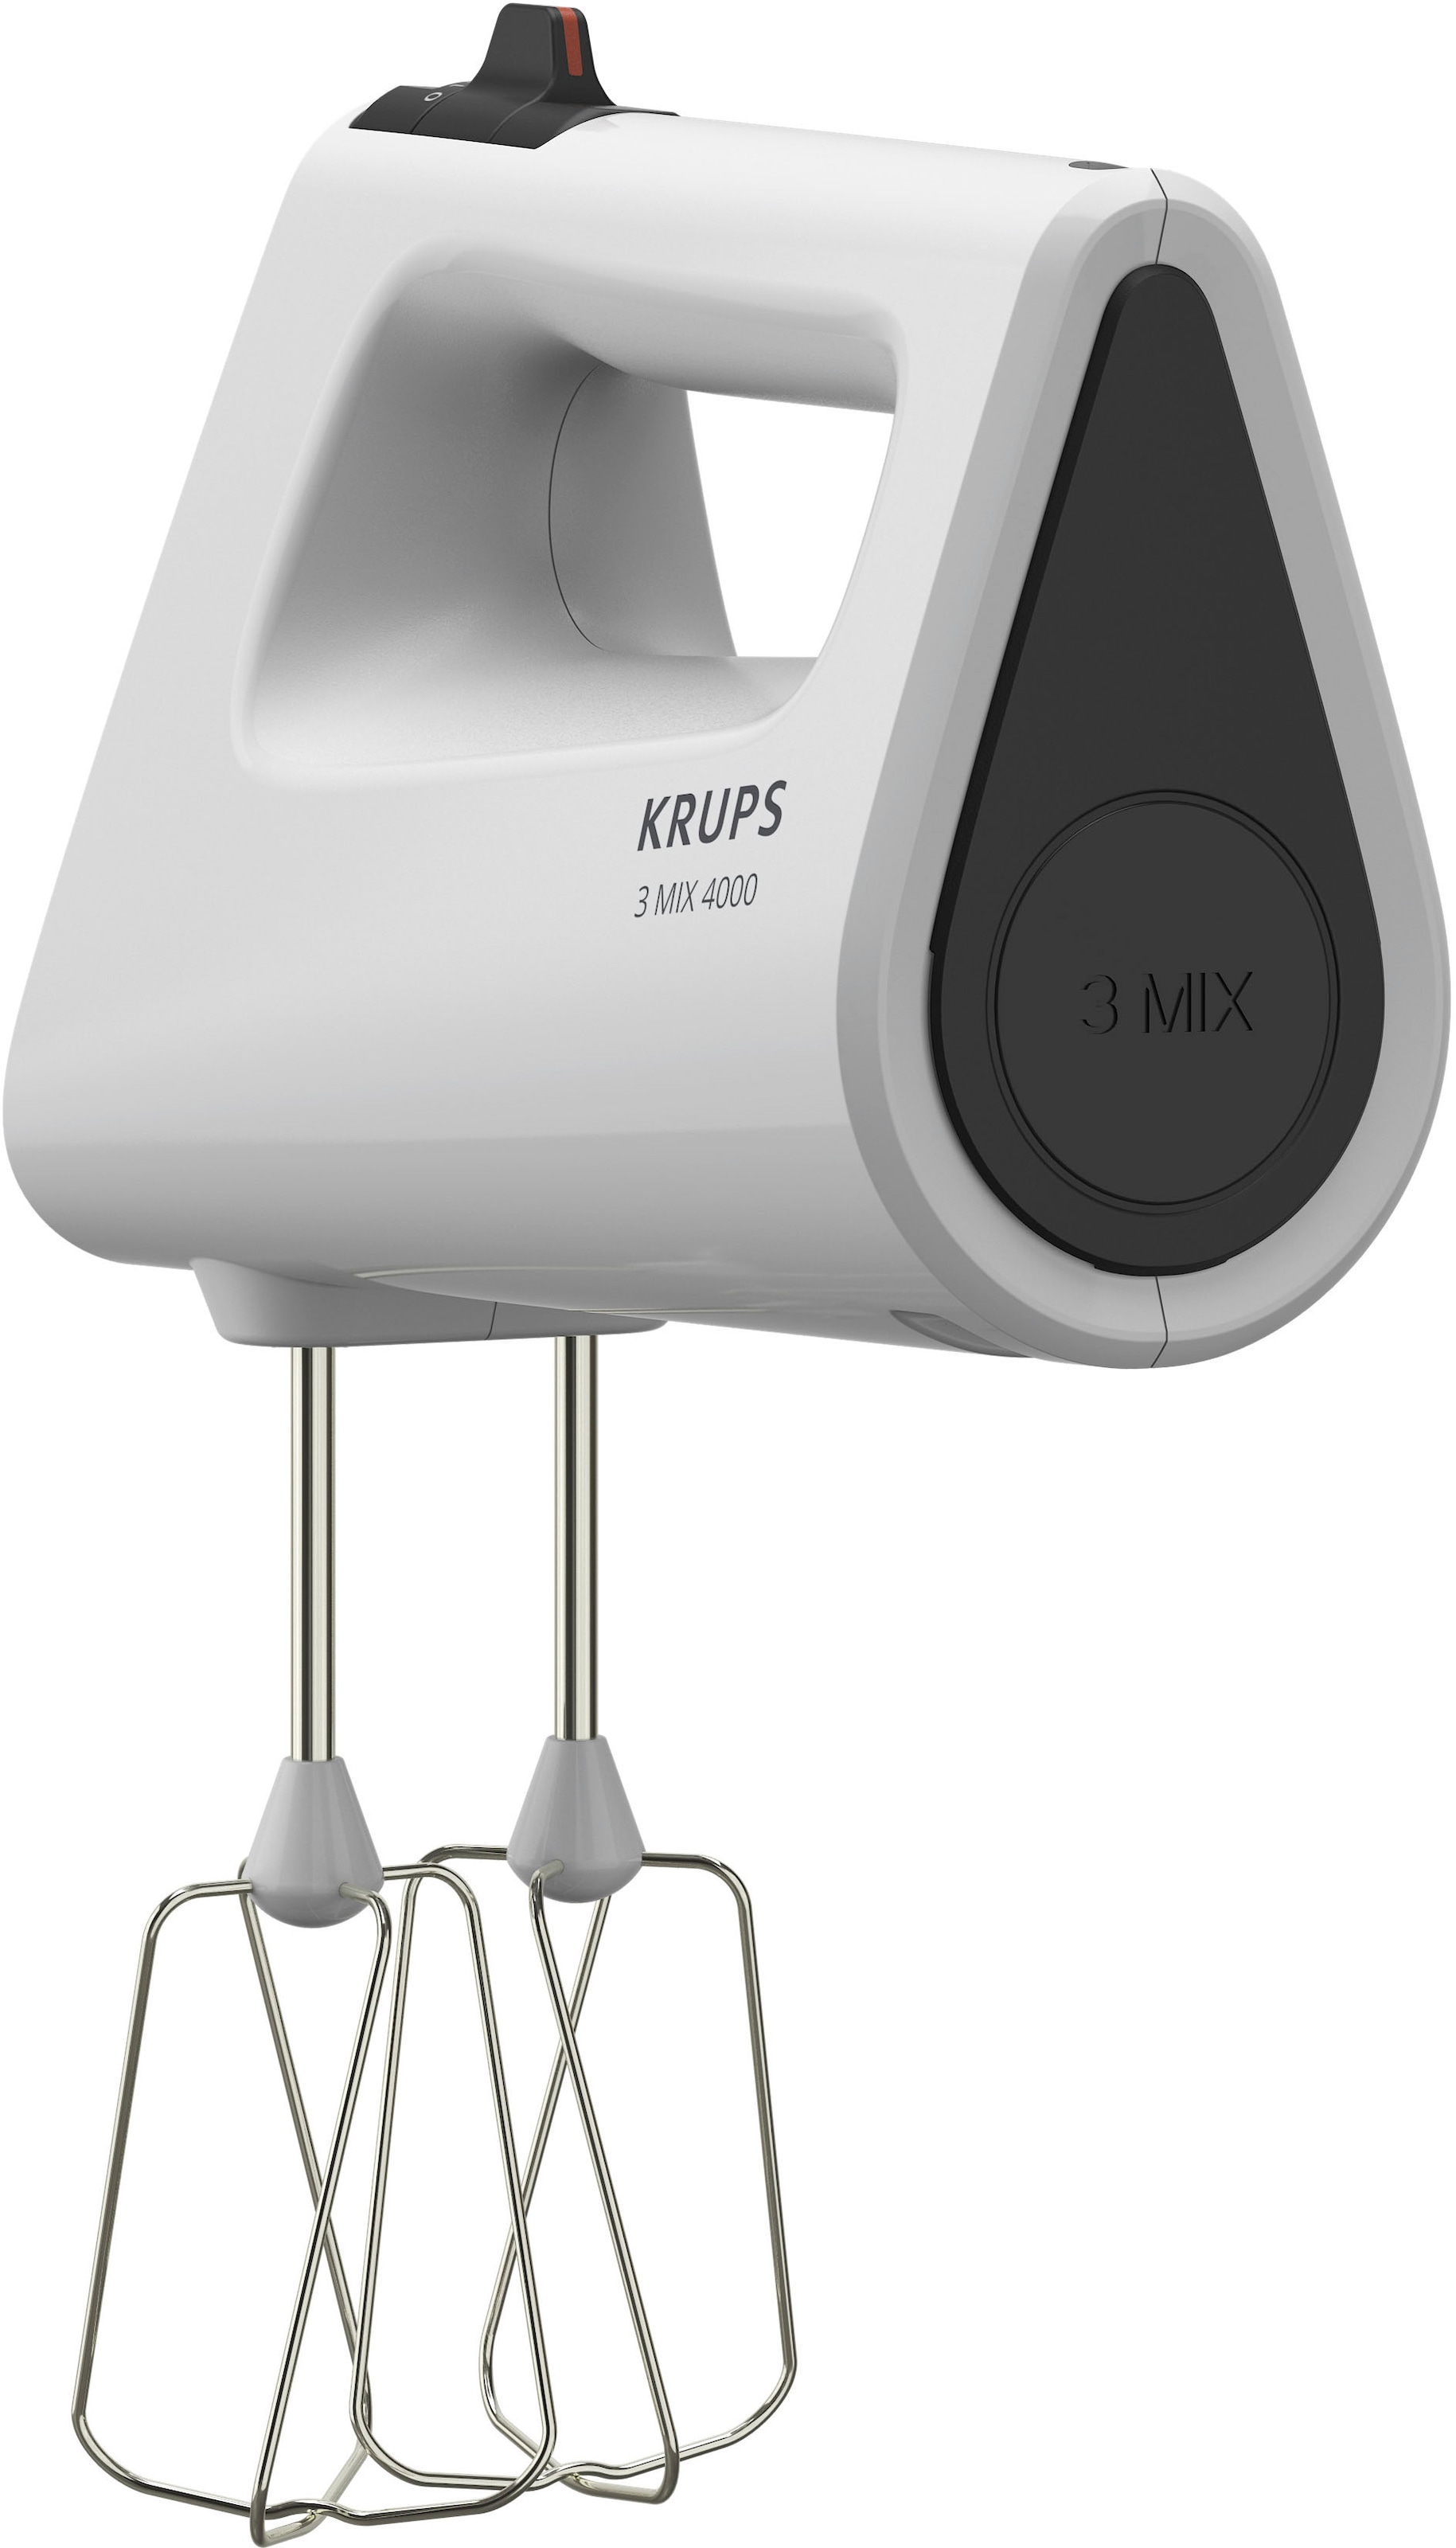 Krups Handmixer »GN4001 3 Mix 4000«, 450 W, Turbo- und Auswurf-Funktion, inkl. 2 Rührbesen und 2 Knethaken